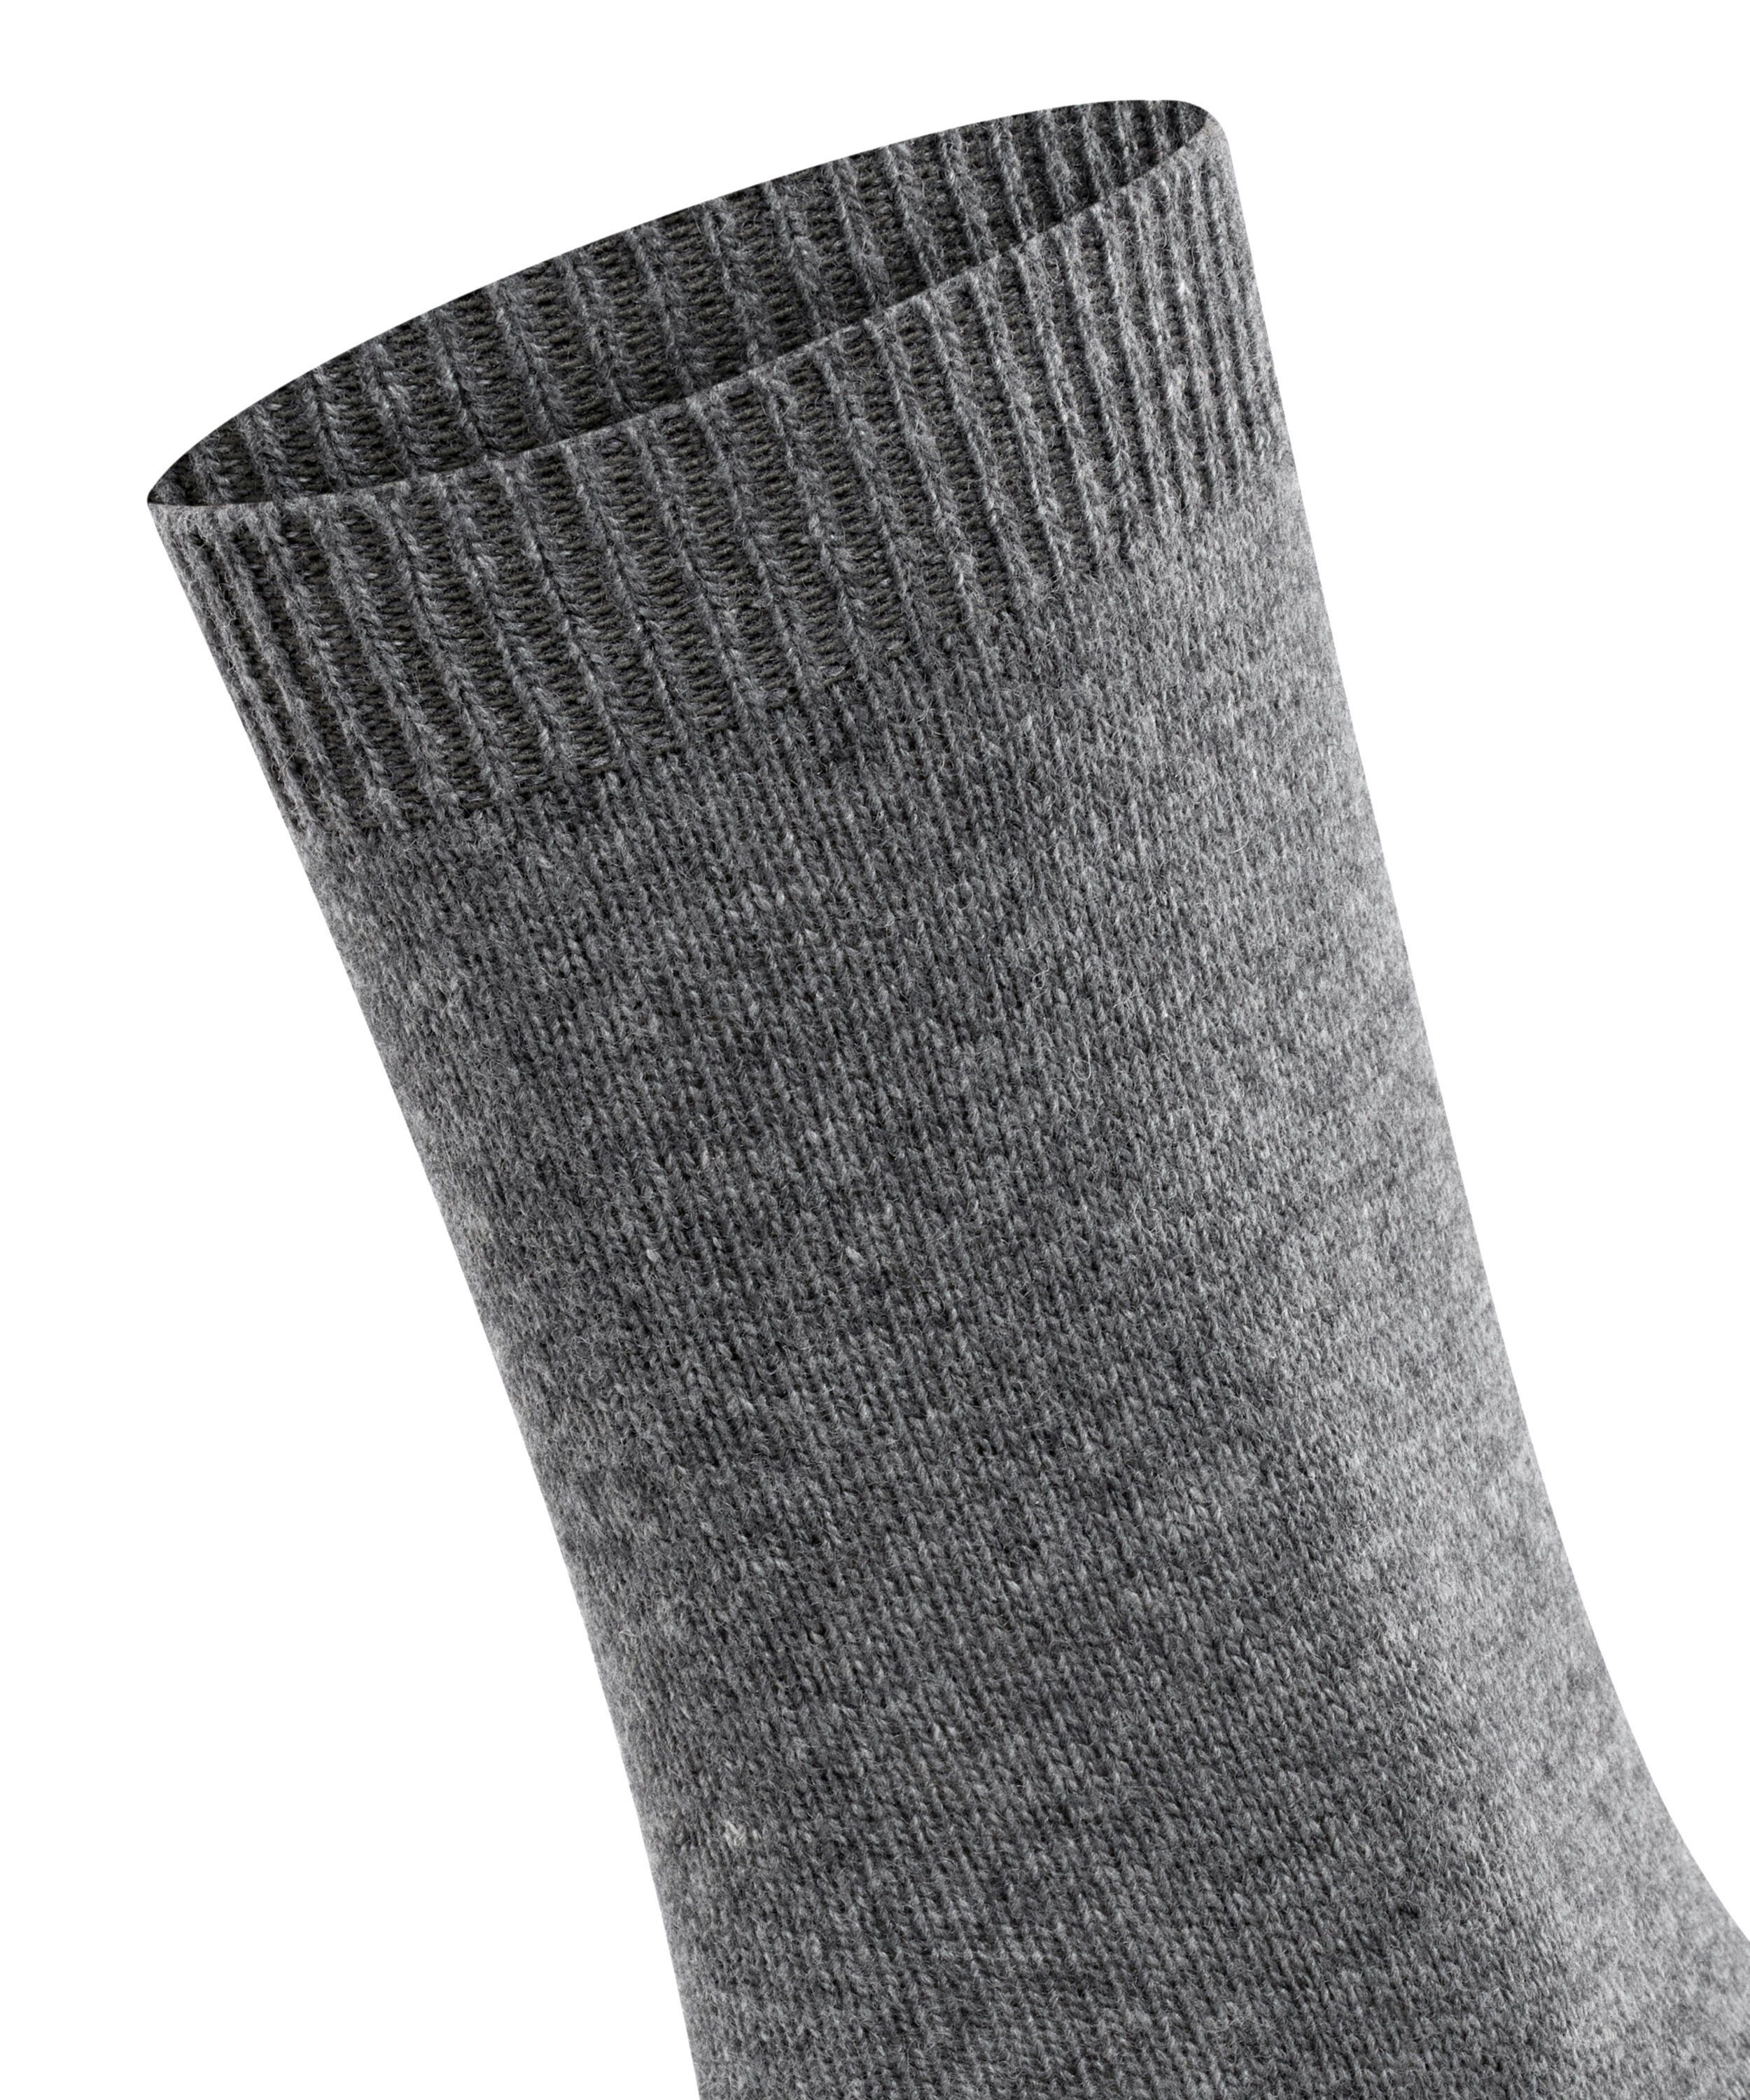 FALKE Cosy greymix (3399) Socken (1-Paar) Wool